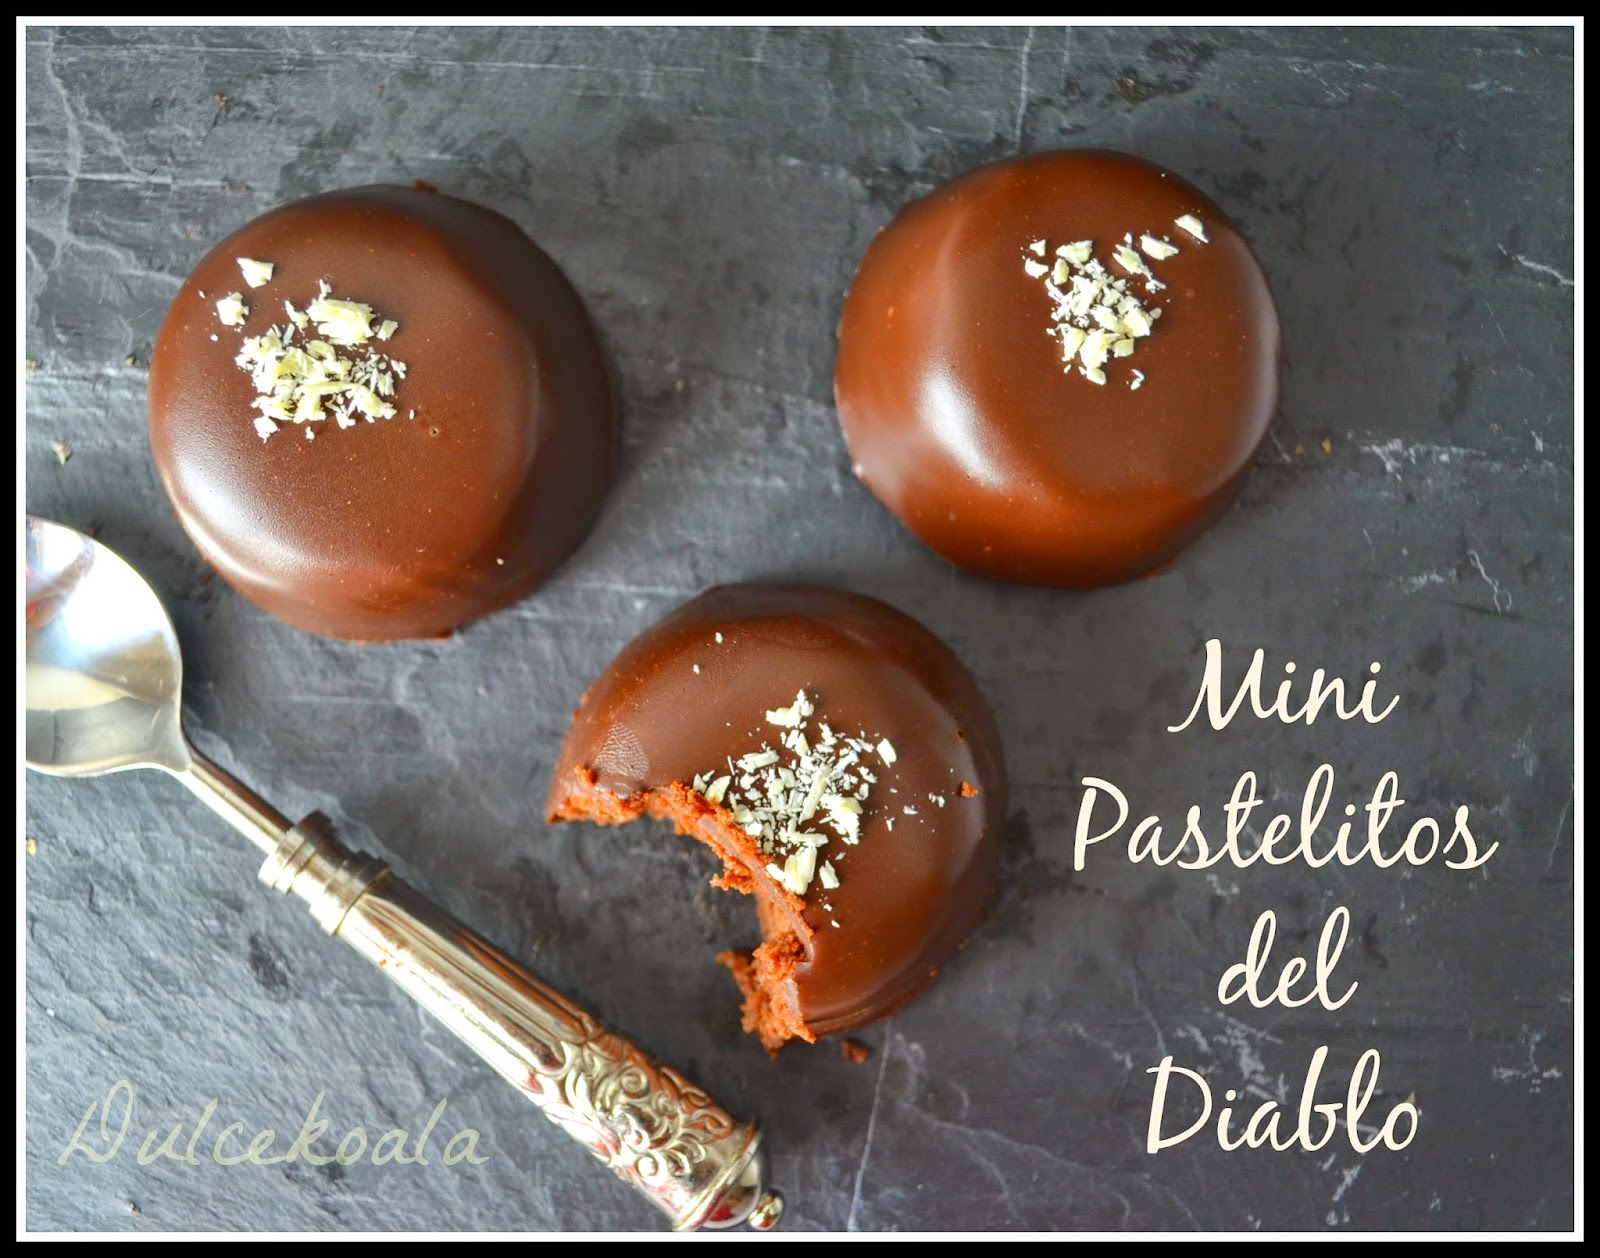 http://dulcekoala.blogspot.com.es/2015/02/mini-pastelitos-del-diablo-devils-food.html